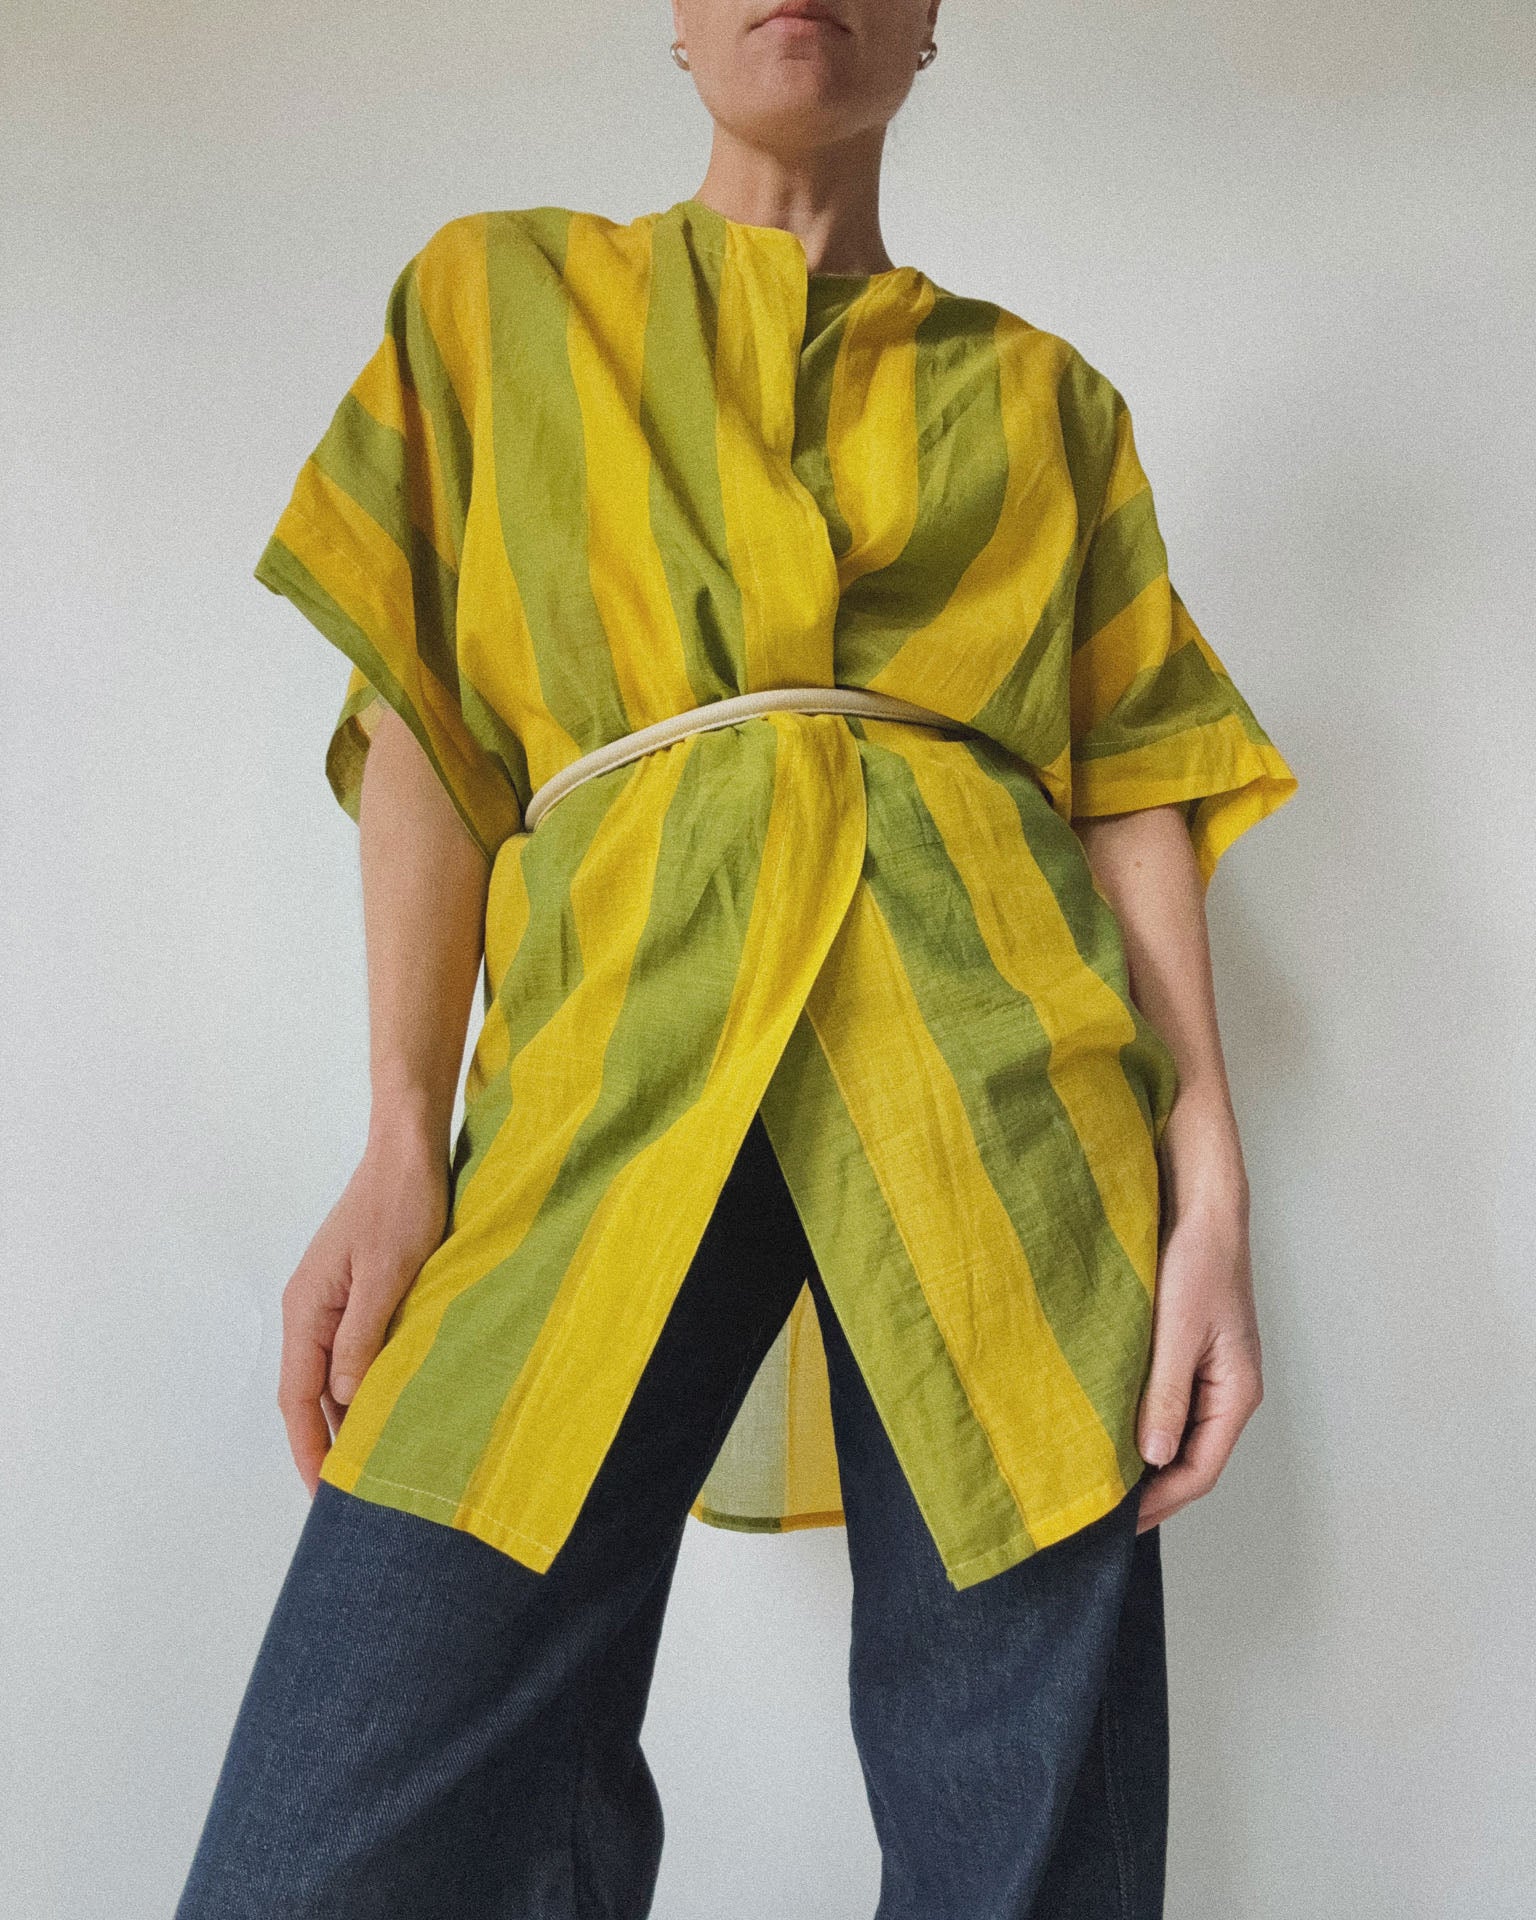 Gauzy Cotton Kimono Top, Marigold Stripe